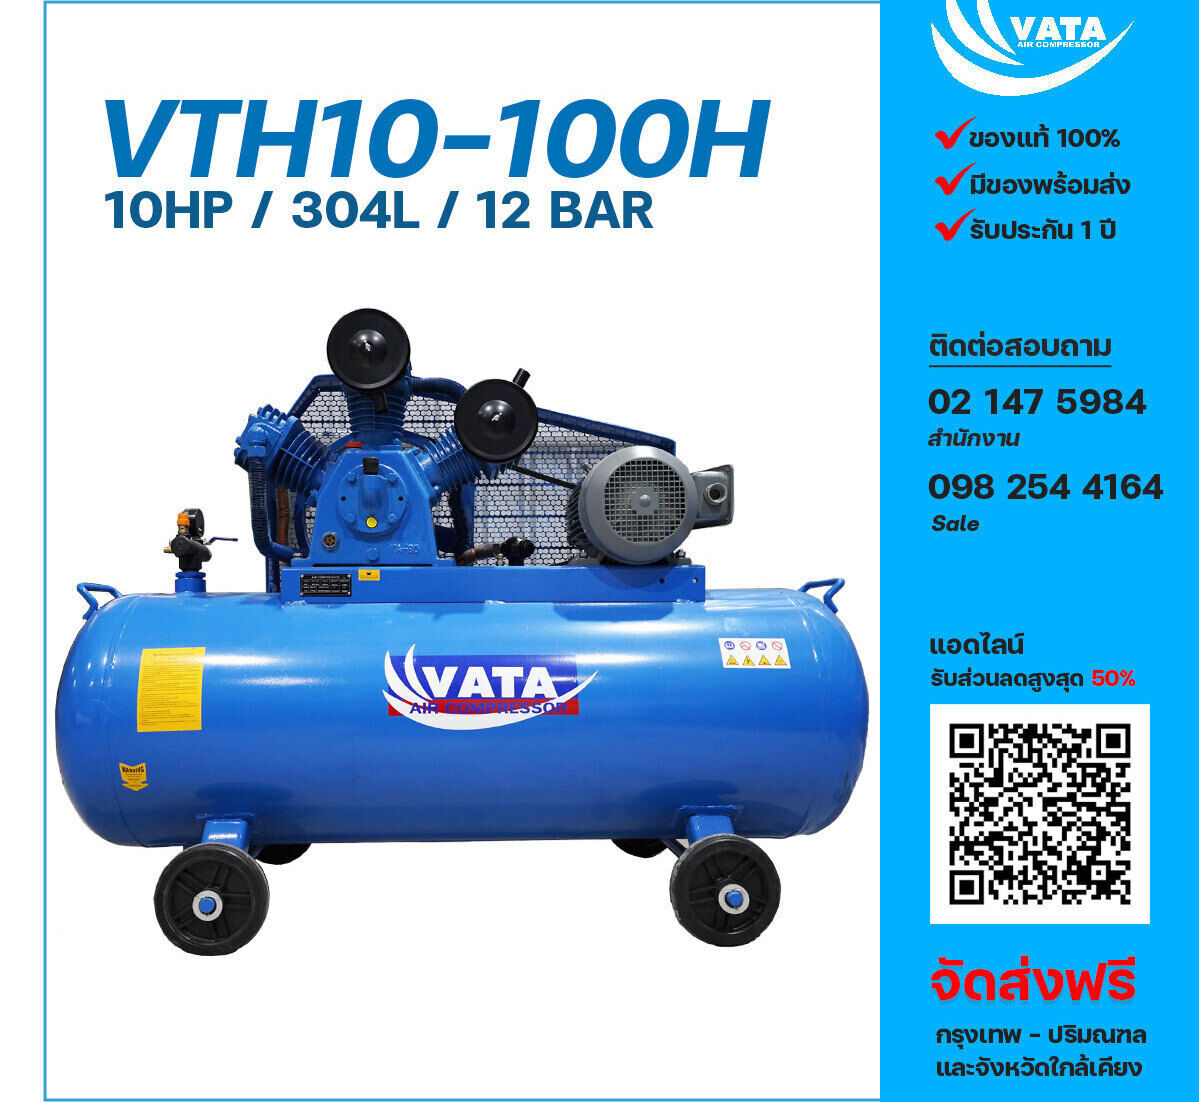 ปั๊มลมวาตะแรงดันสูง VATA Two-Stage VTH10-100H 380V ปั๊มลมลูกสูบ ขนาด 3 สูบ 10 แรงม้า 304 ลิตร VATA พร้อมมอเตอร์ ไฟ 380V ส่งฟรี กรุงเทพฯ-ปริมณฑล รับประกัน 1 ปี